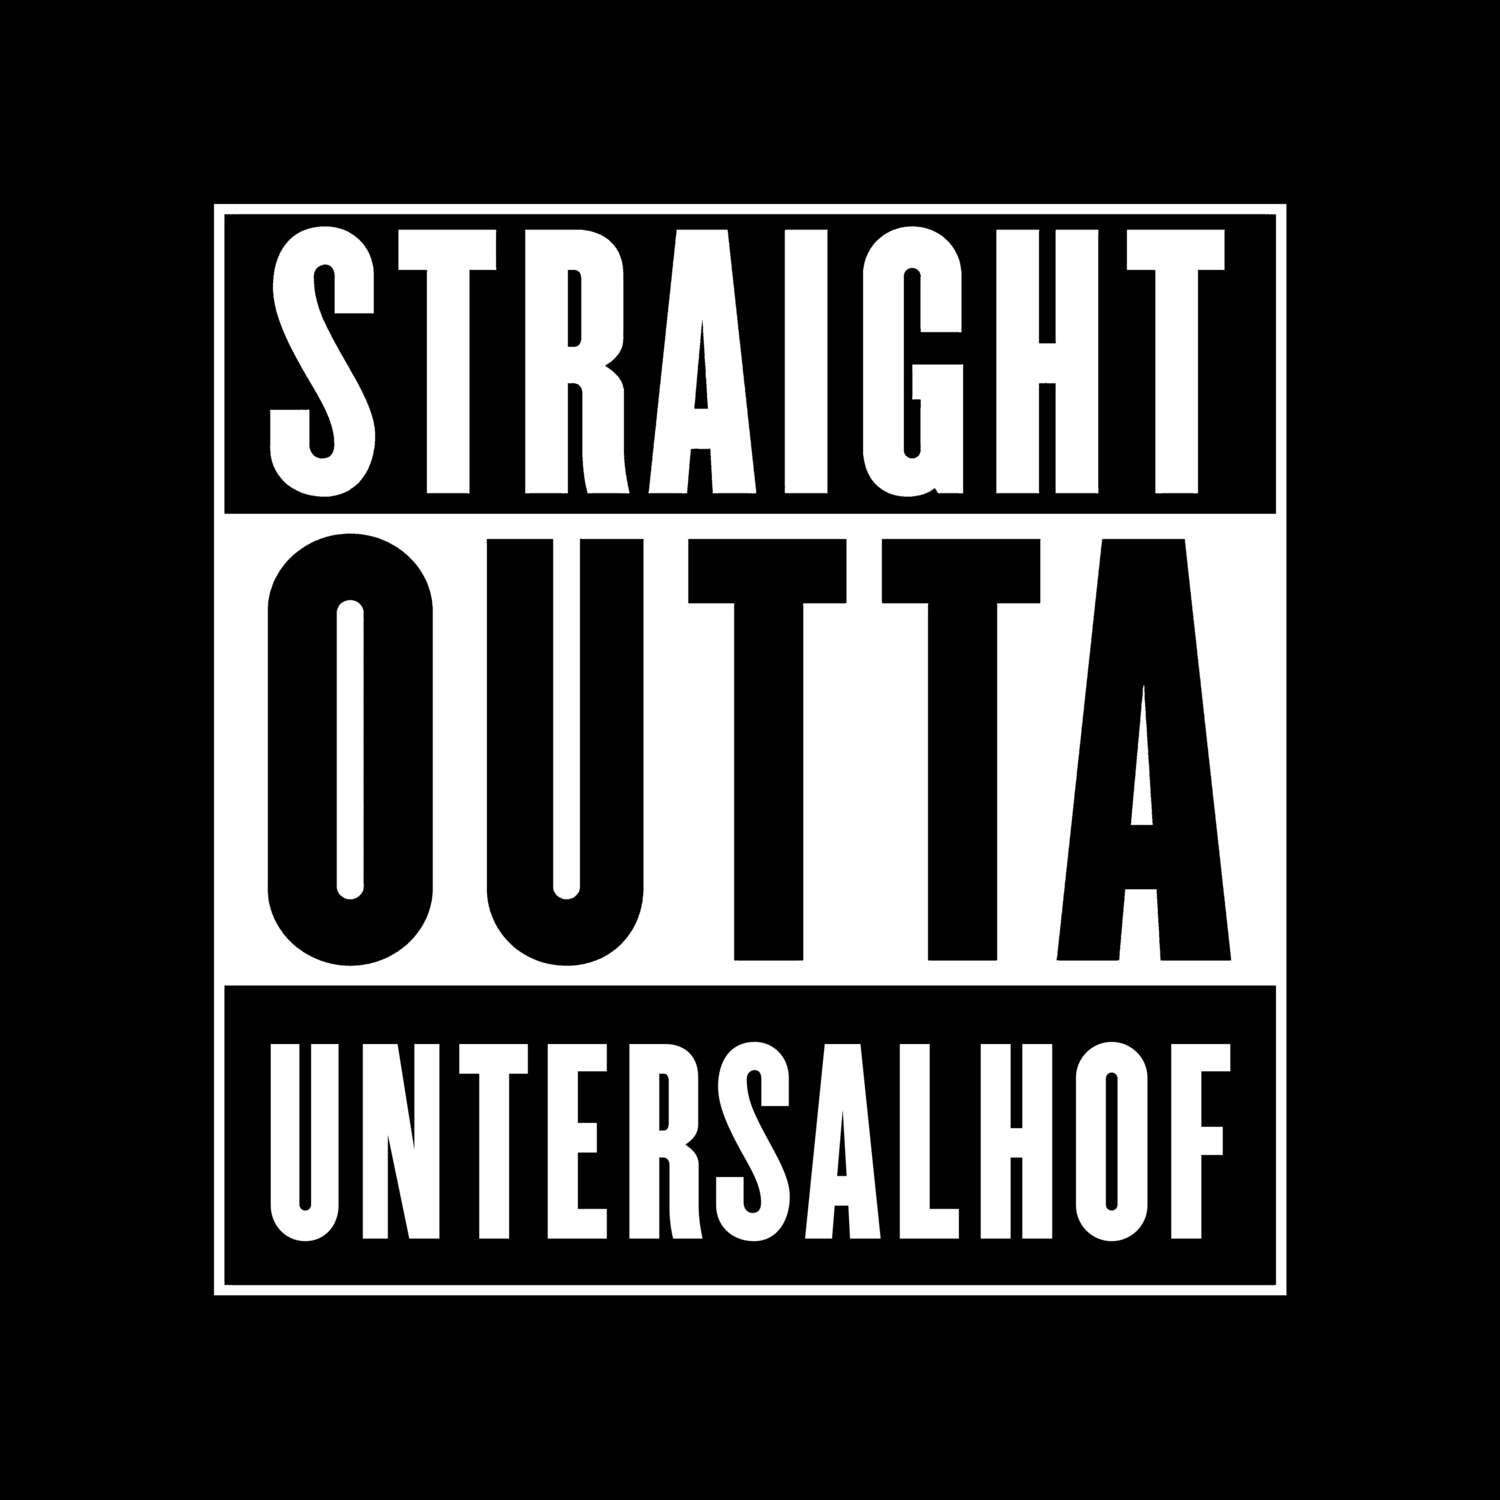 Untersalhof T-Shirt »Straight Outta«